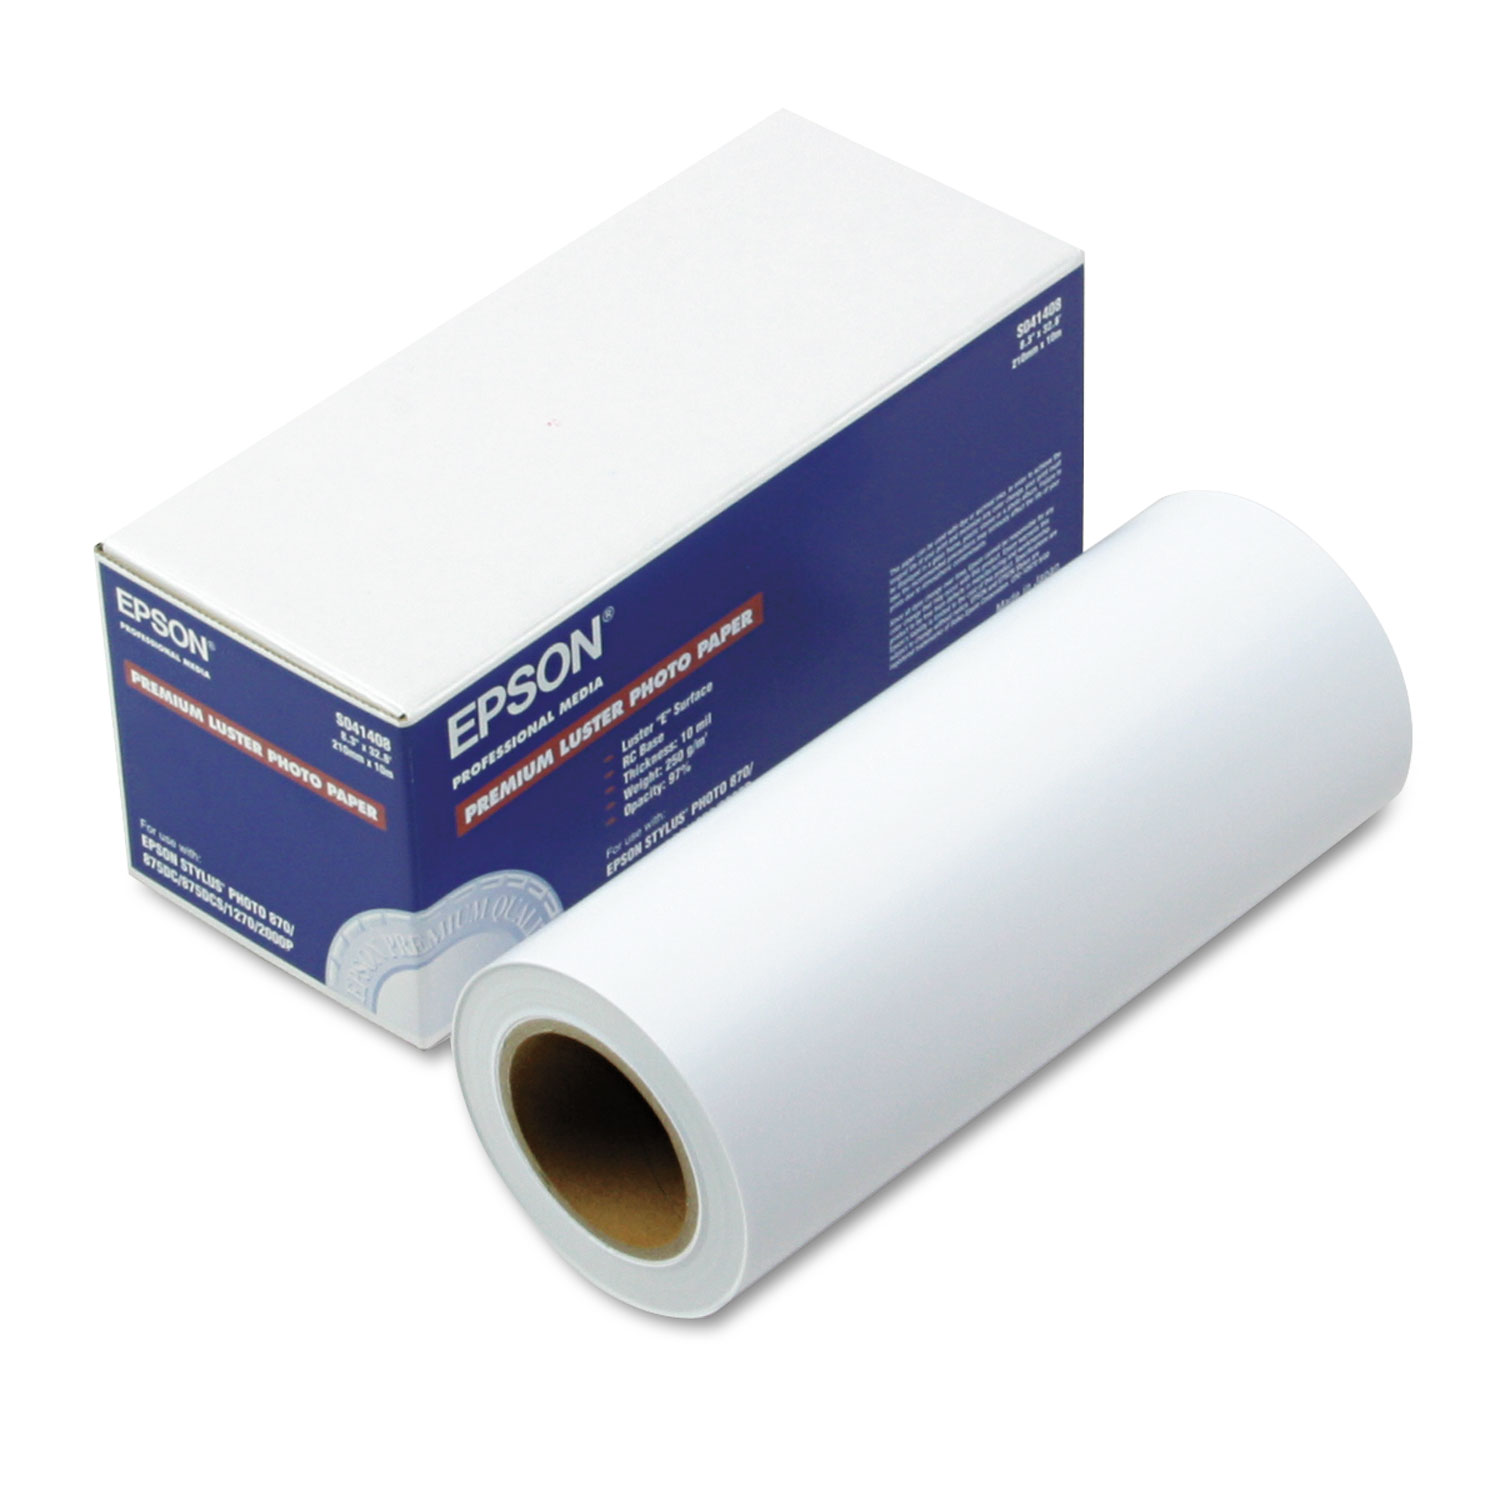  Epson EPSS041408 Ultra Premium Photo Paper Roll, 10 mil, 8 x 32.8 ft, Luster White (EPSS041408) 